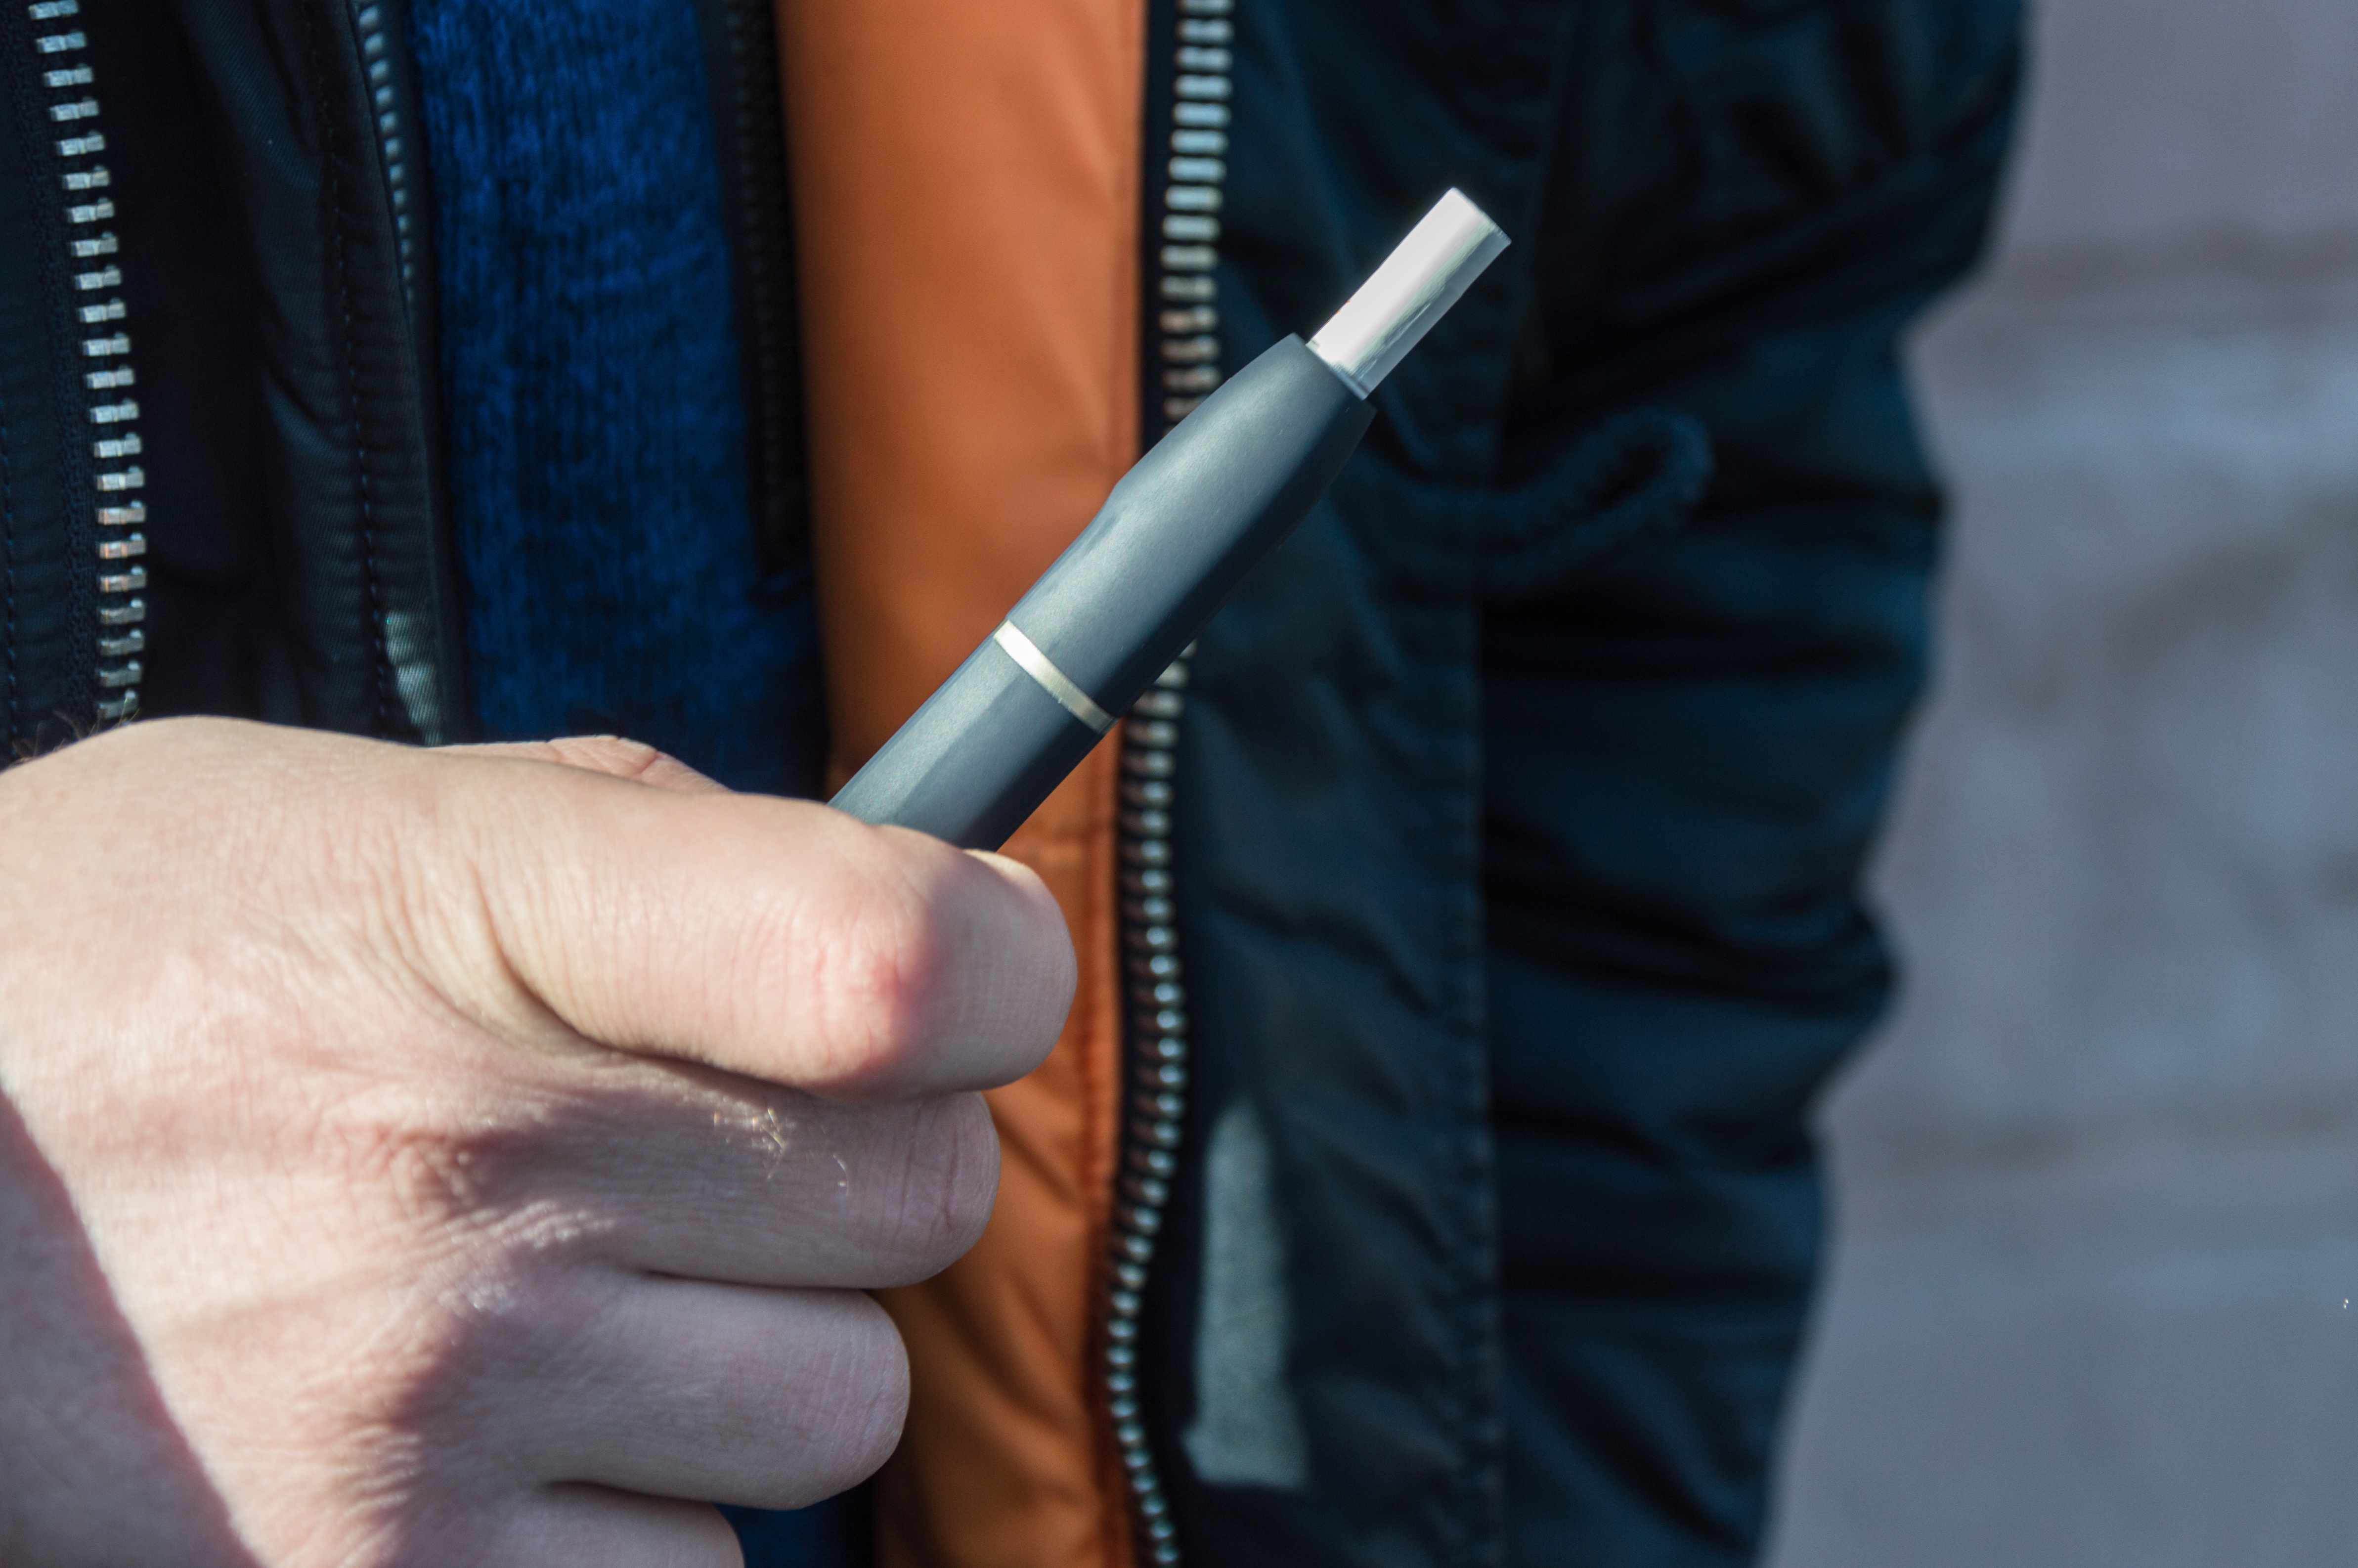 Ministerul Sănătăţii iese la atac împotriva fumatului de tutun încălzit şi vrea să limiteze publicitatea pentru aceste dispozitive